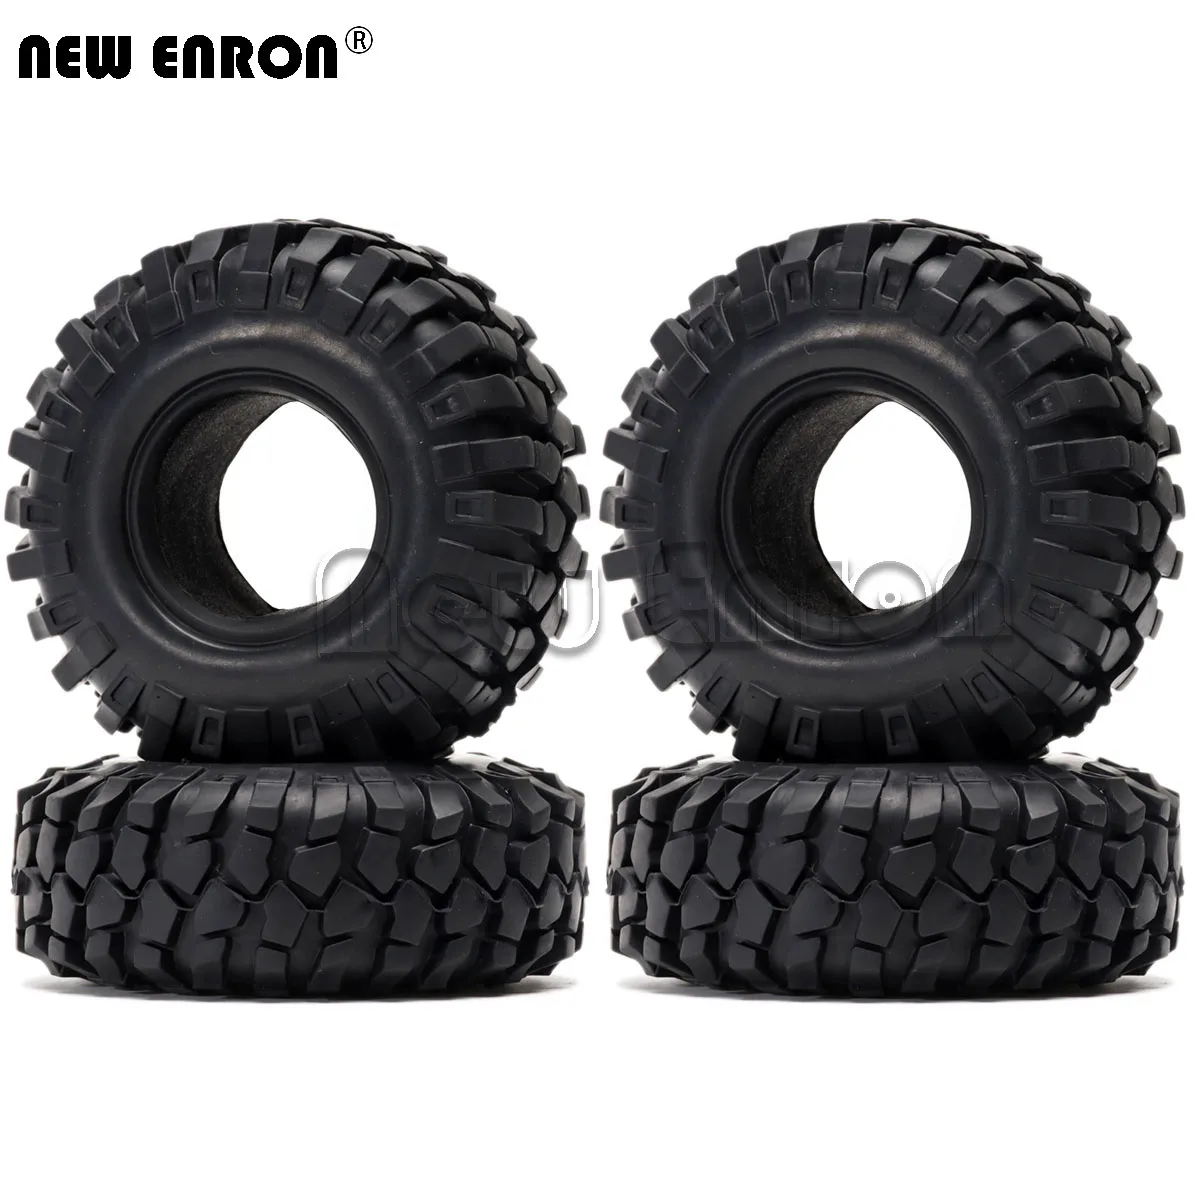 

NEW ENRON 4PCS 1.9" Rubber 96mm Tires Tyre RC 1/10 1:10 Model Car Climbing Rock Crawler Axial SCX10 SCX10 II 90046 90047 TRX4